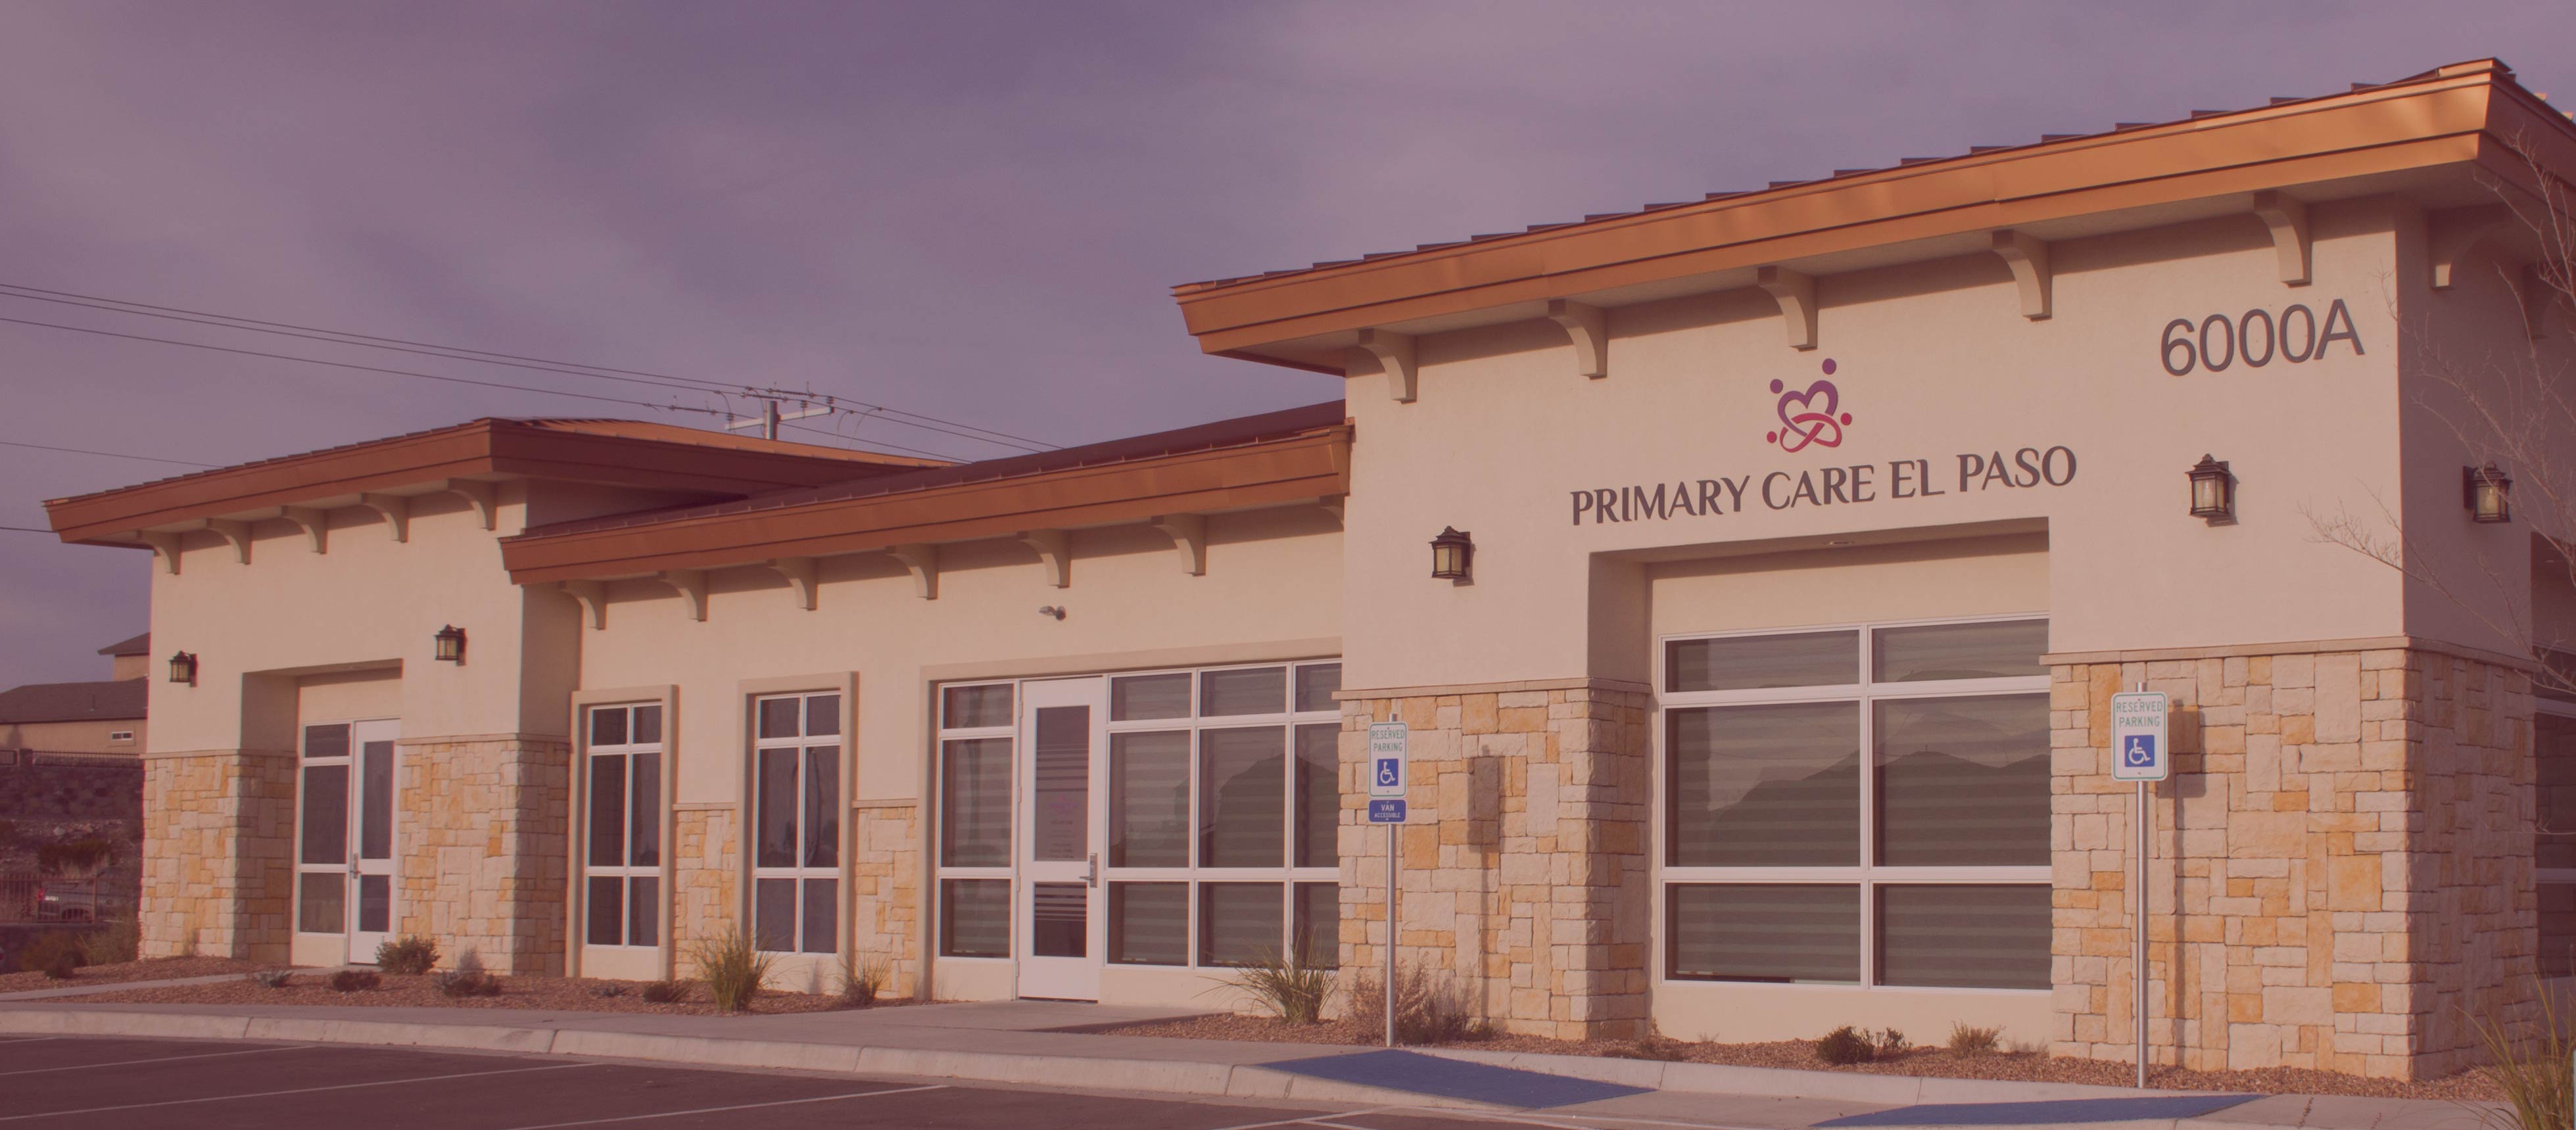 Primary Care El Paso Cover Image